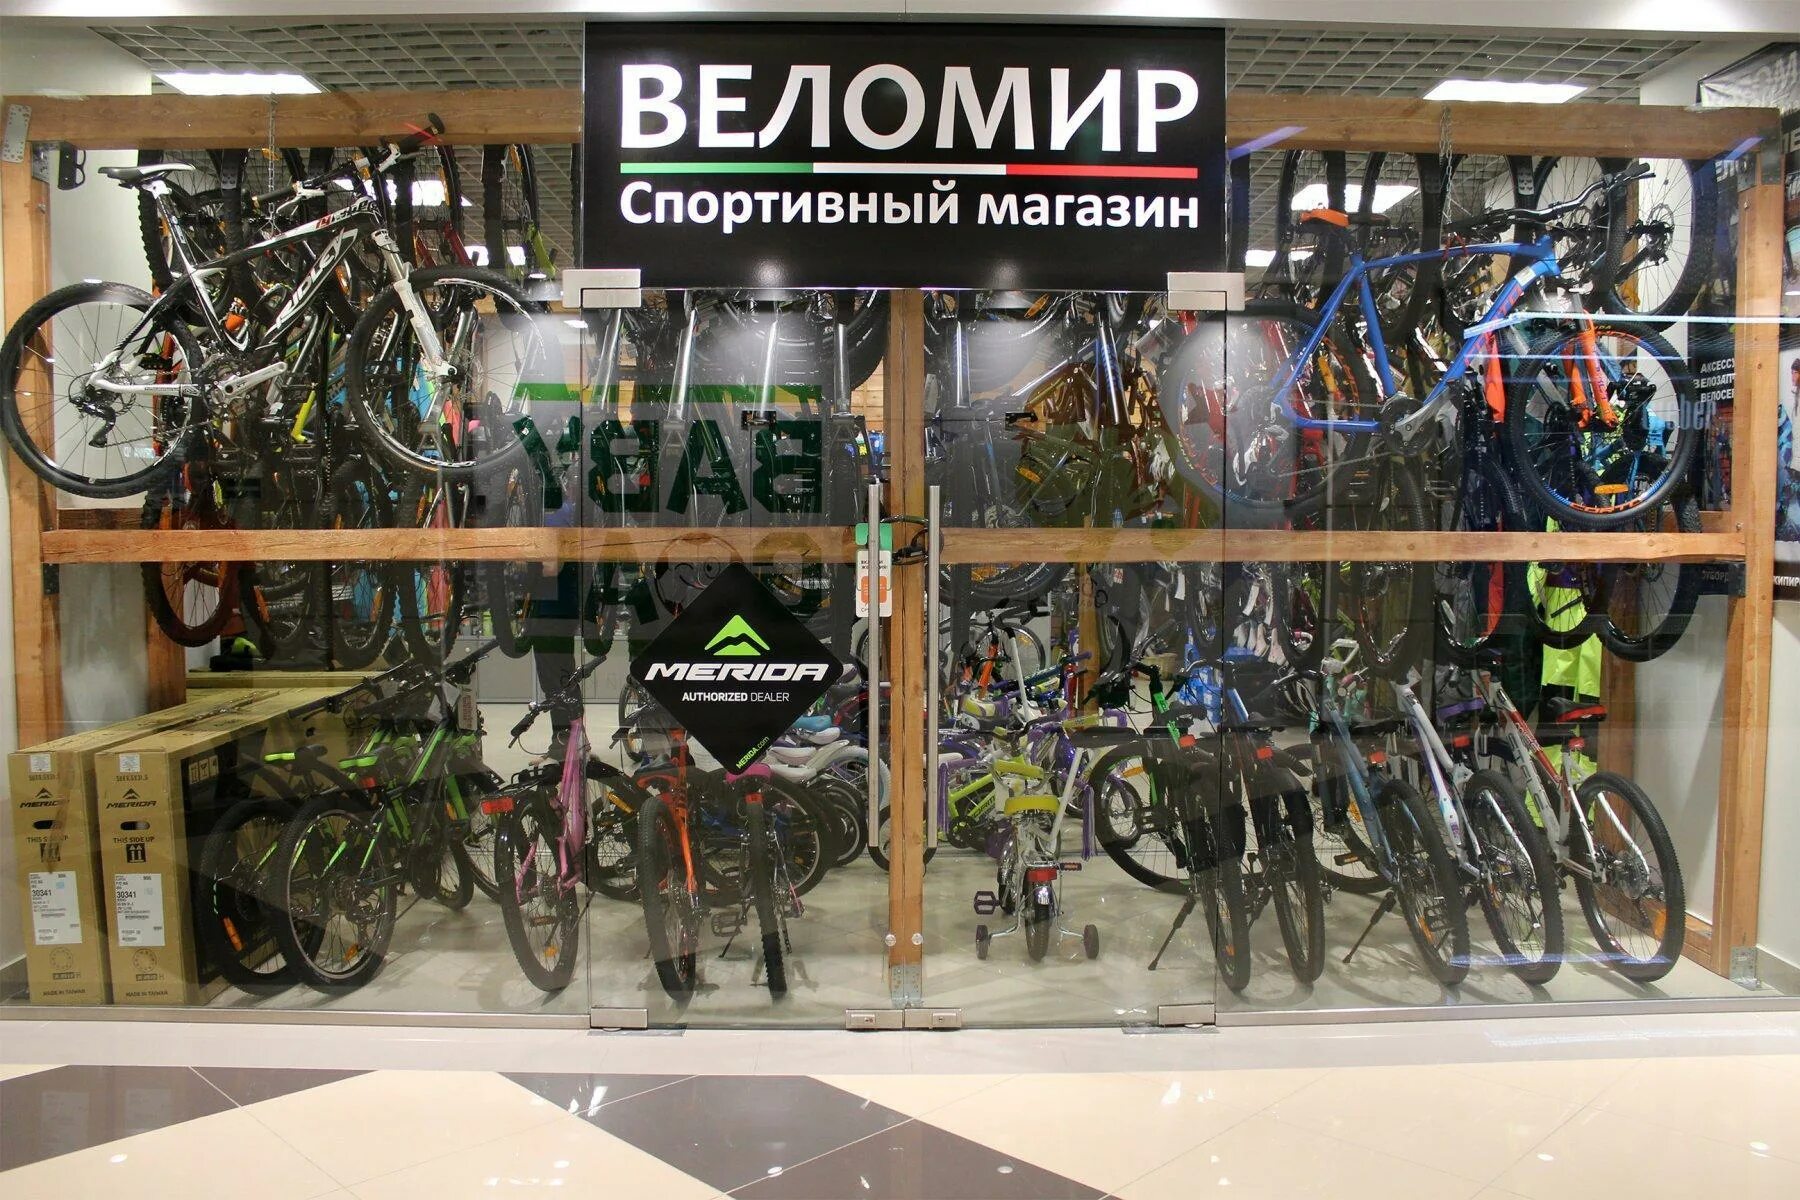 Велосипеды в орле магазины цены. Самара Московское шоссе 17 Веломир. Магазин велосипедов Веломир.